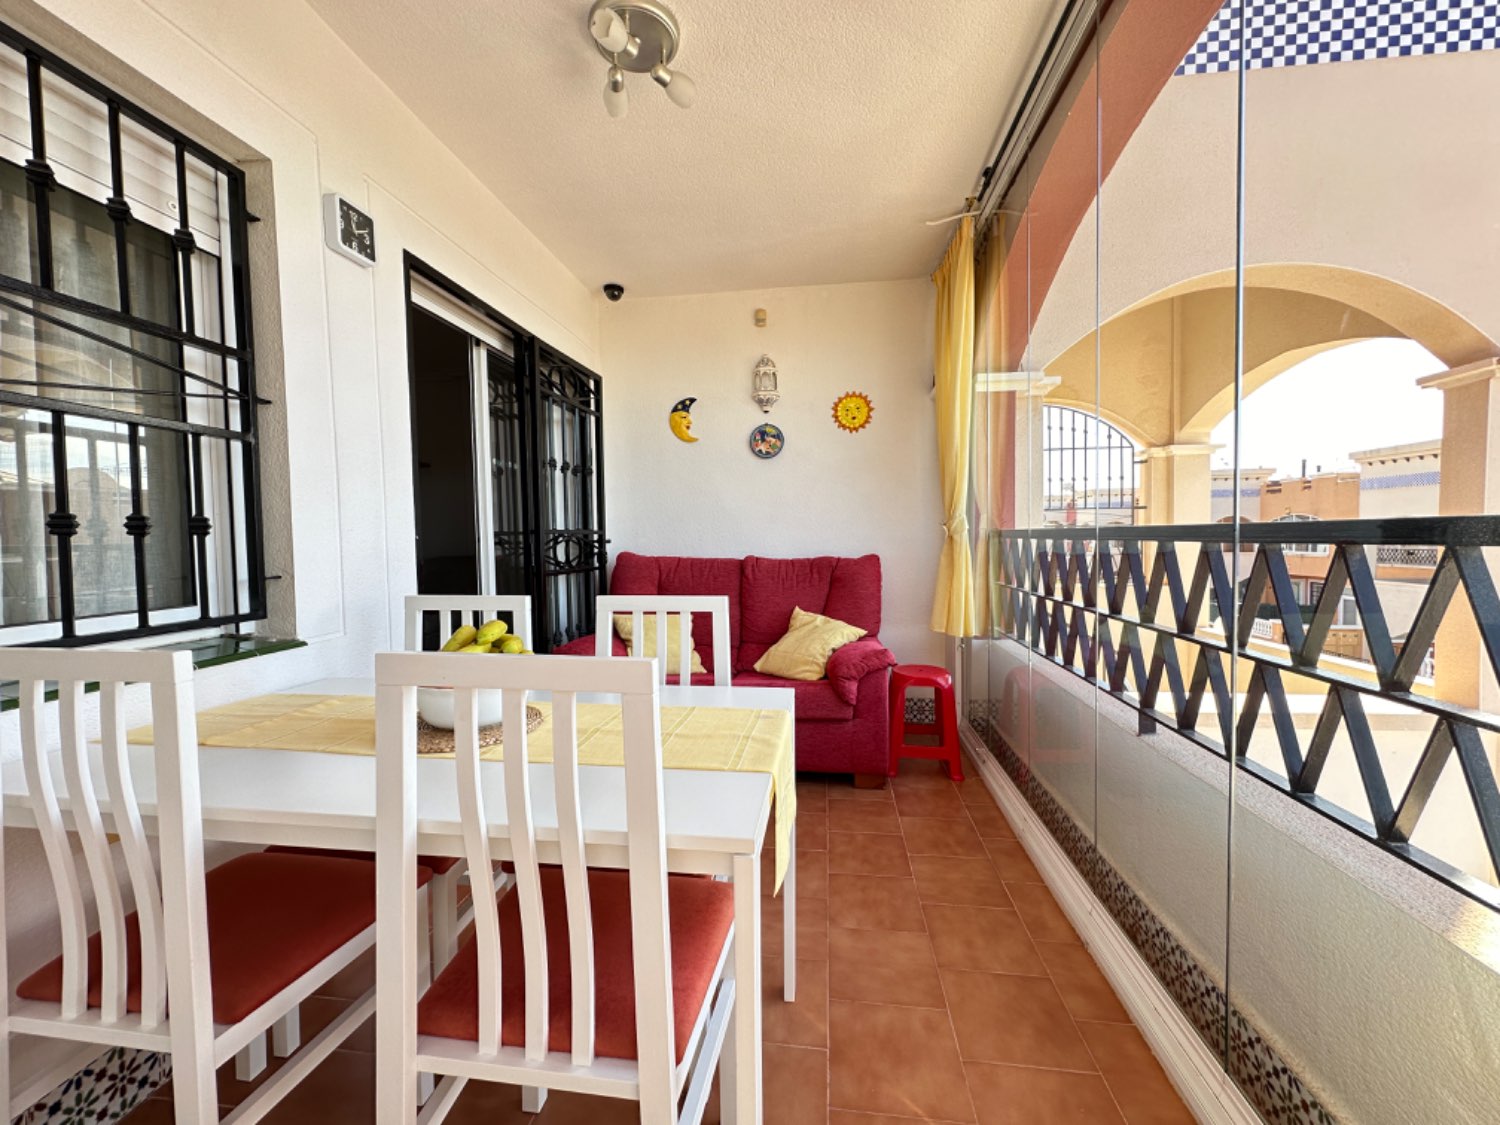 Øverste etage hjørne lejlighed beliggende i Los Altos de Orihuela Costa 2 soveværelser i perfekte forhold